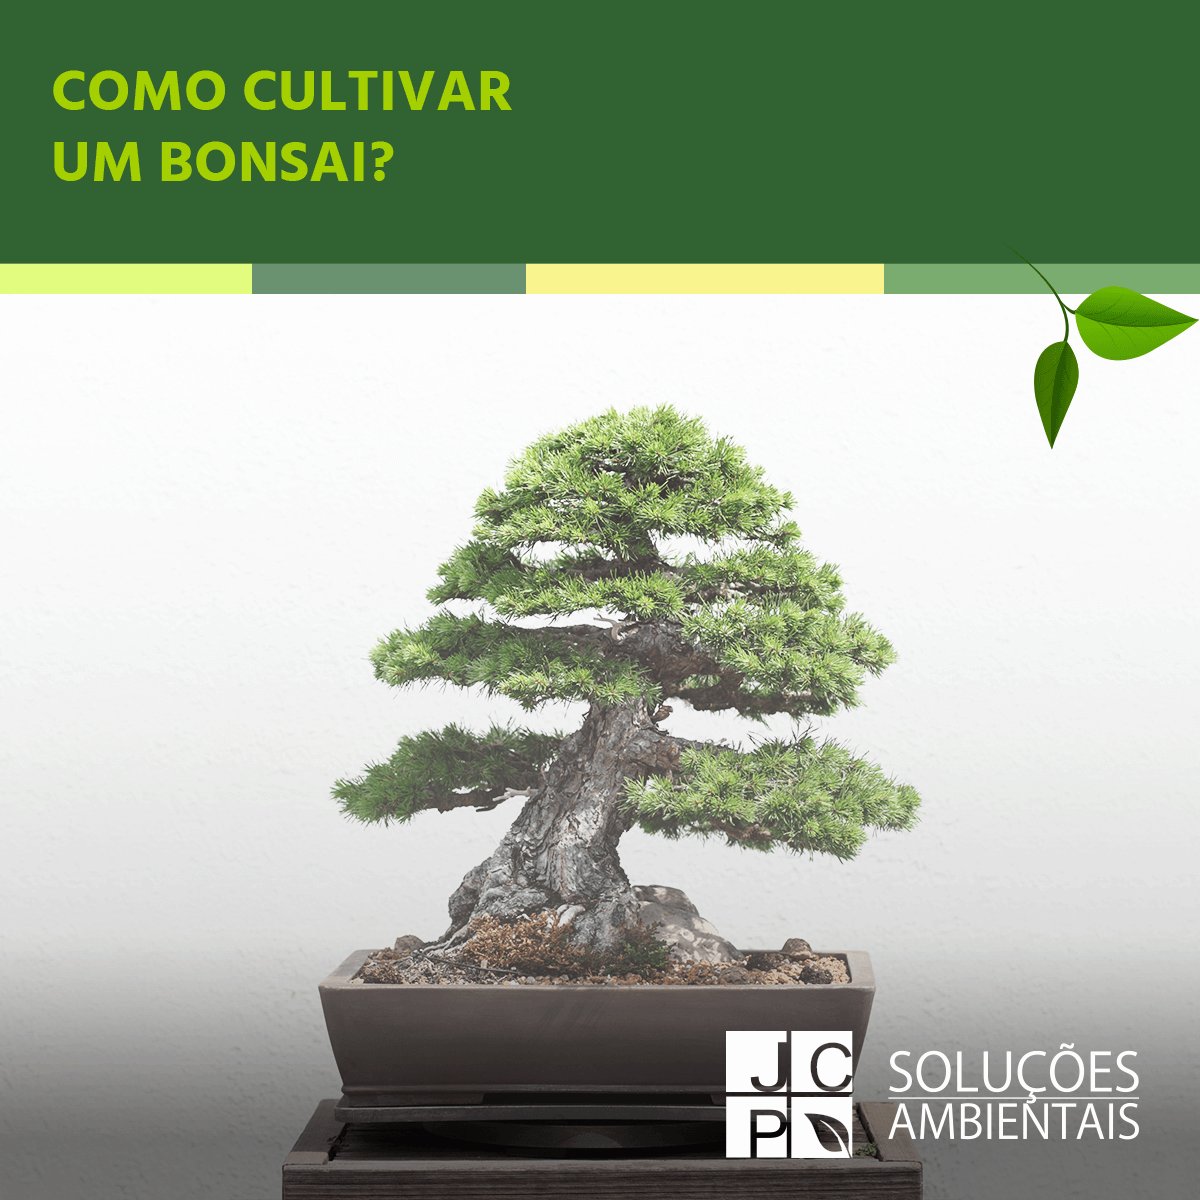 Como cultivar um bonsai? | JCP Soluções Ambientais Campinas